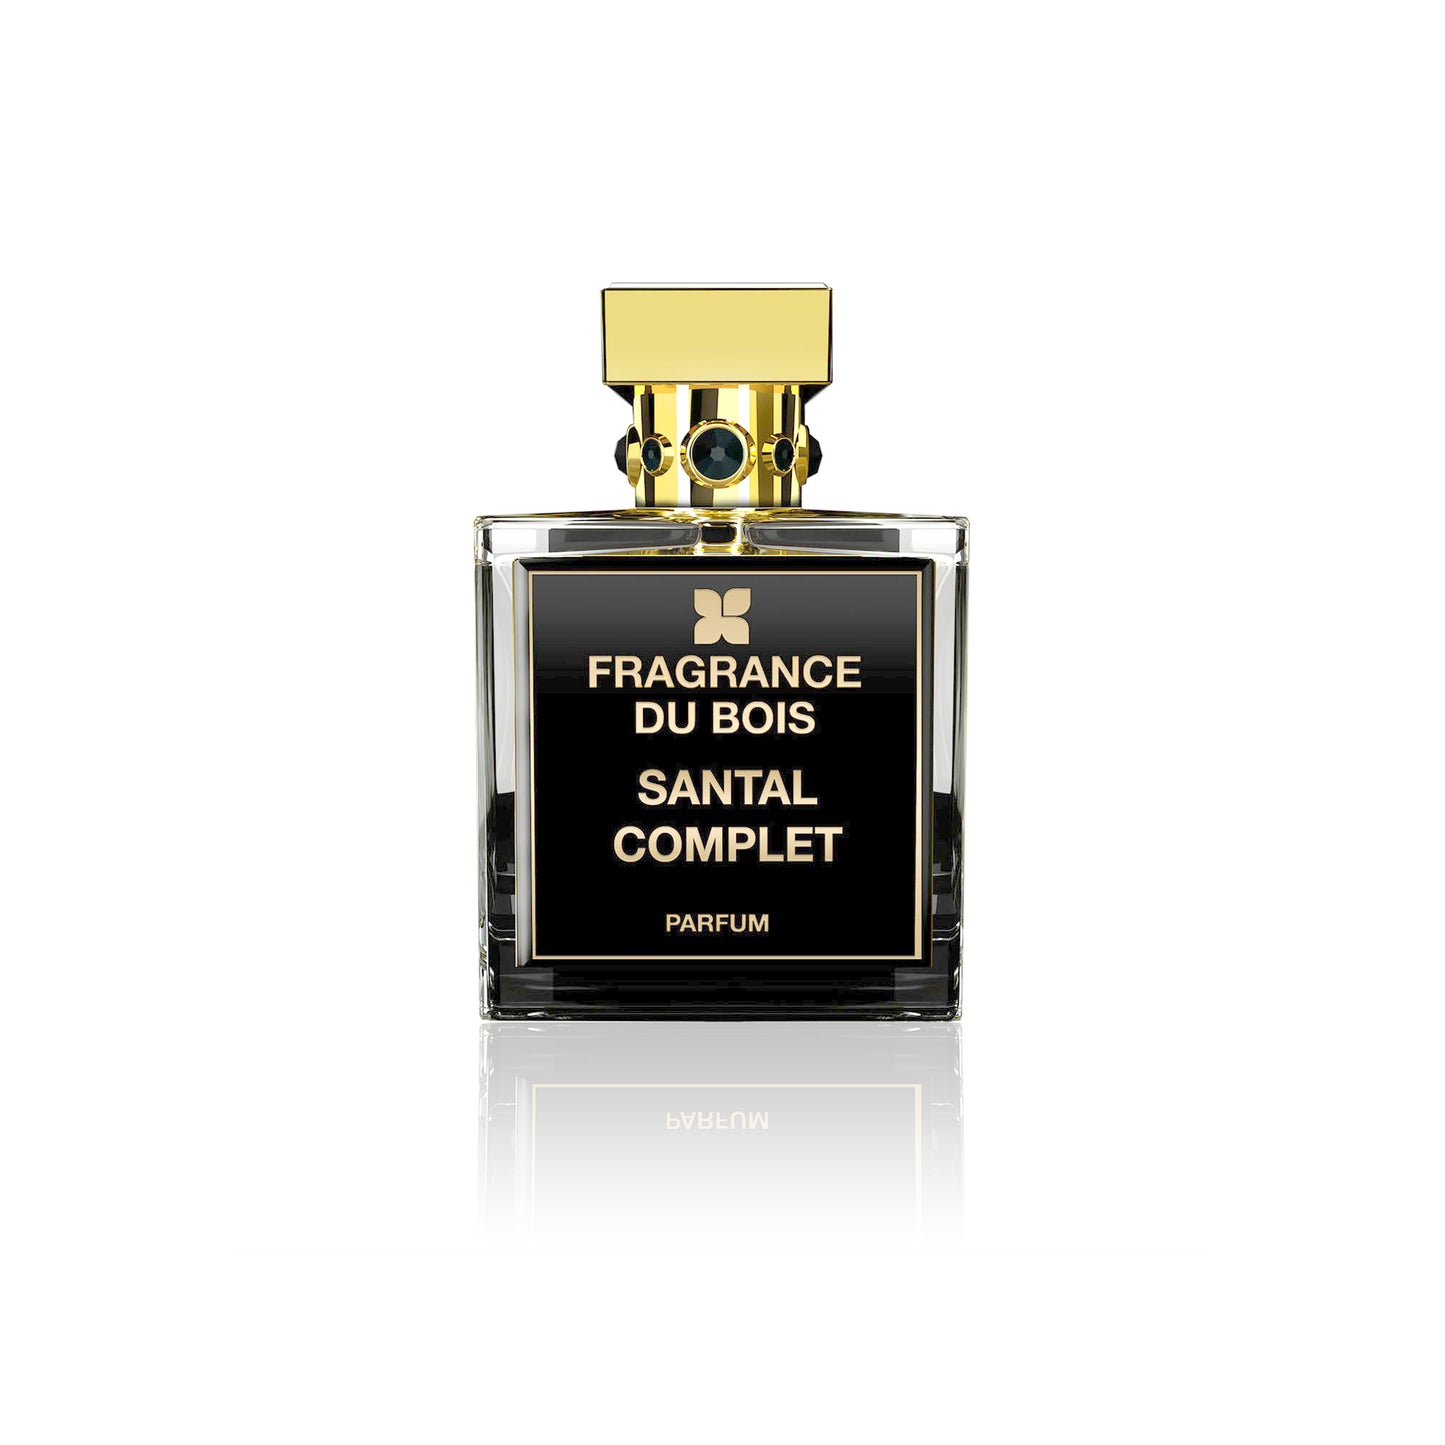 SANTAL COMPLET 2ml Sample Vial - Eau De Parfum